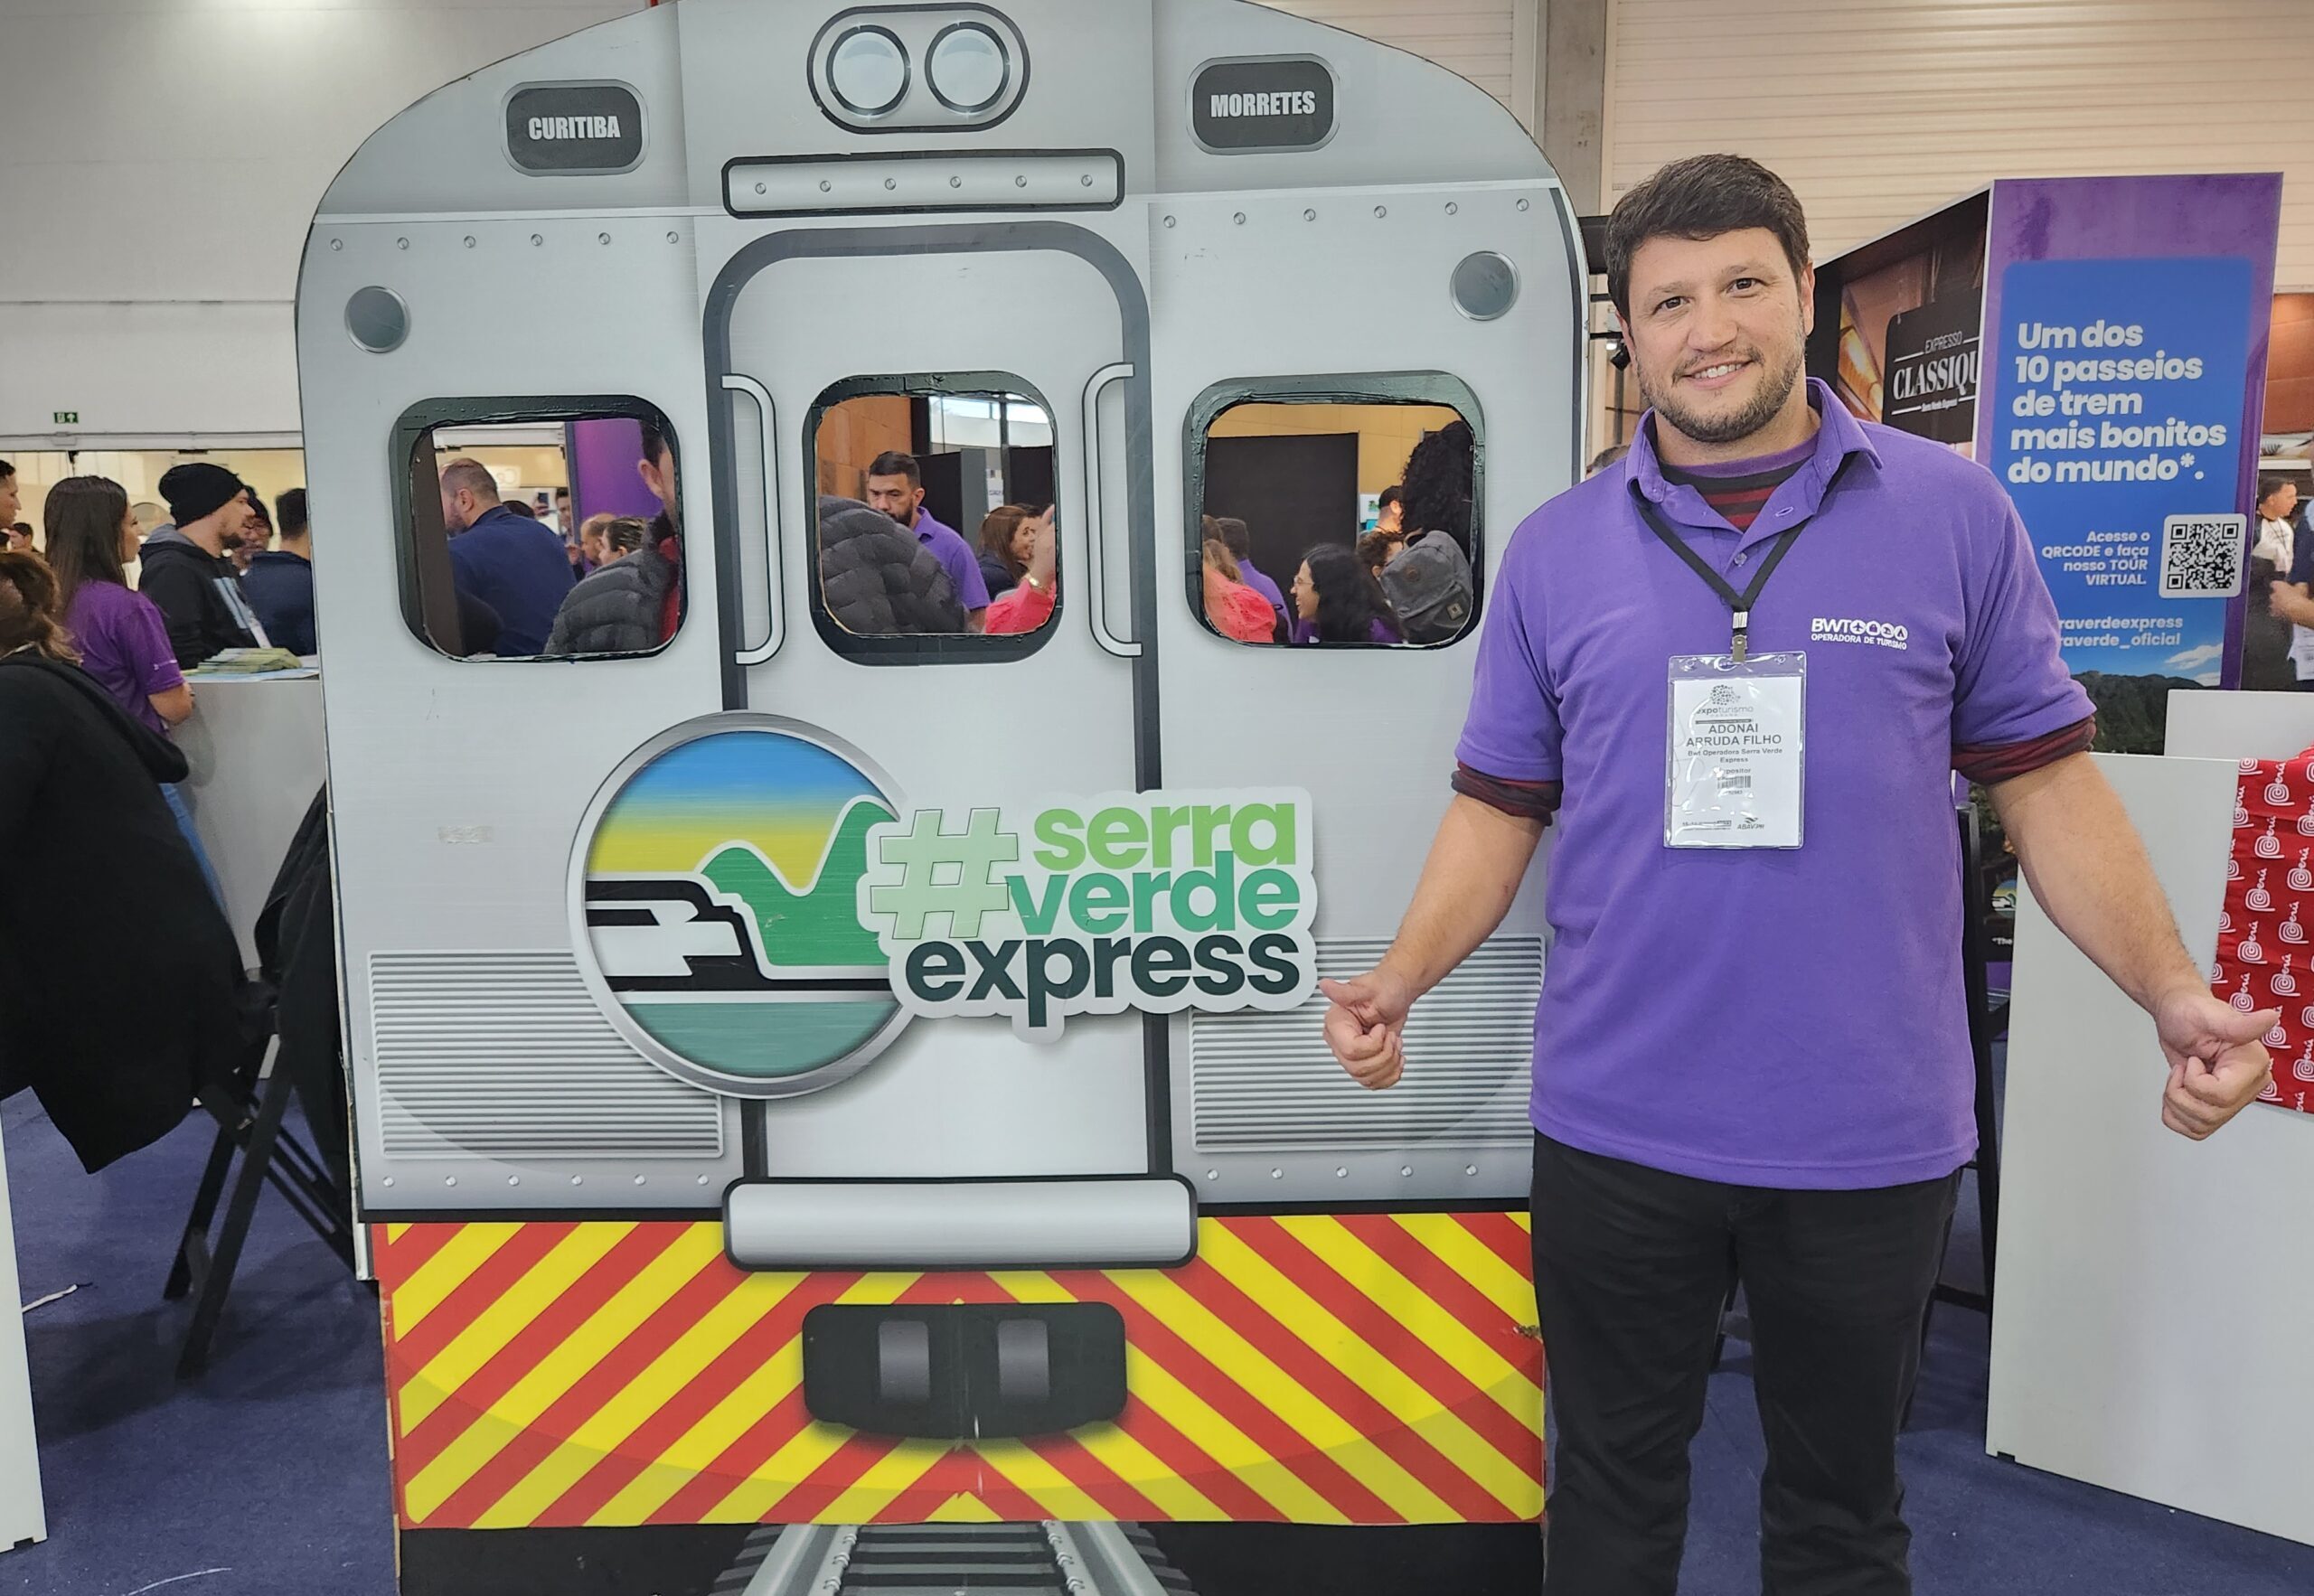 Adonai Arruda Filho diretor da Serra Verde Express scaled e1686934678626 Serra Verde Express destaca lançamento do Expresso Bruxo na Expo Turismo Paraná